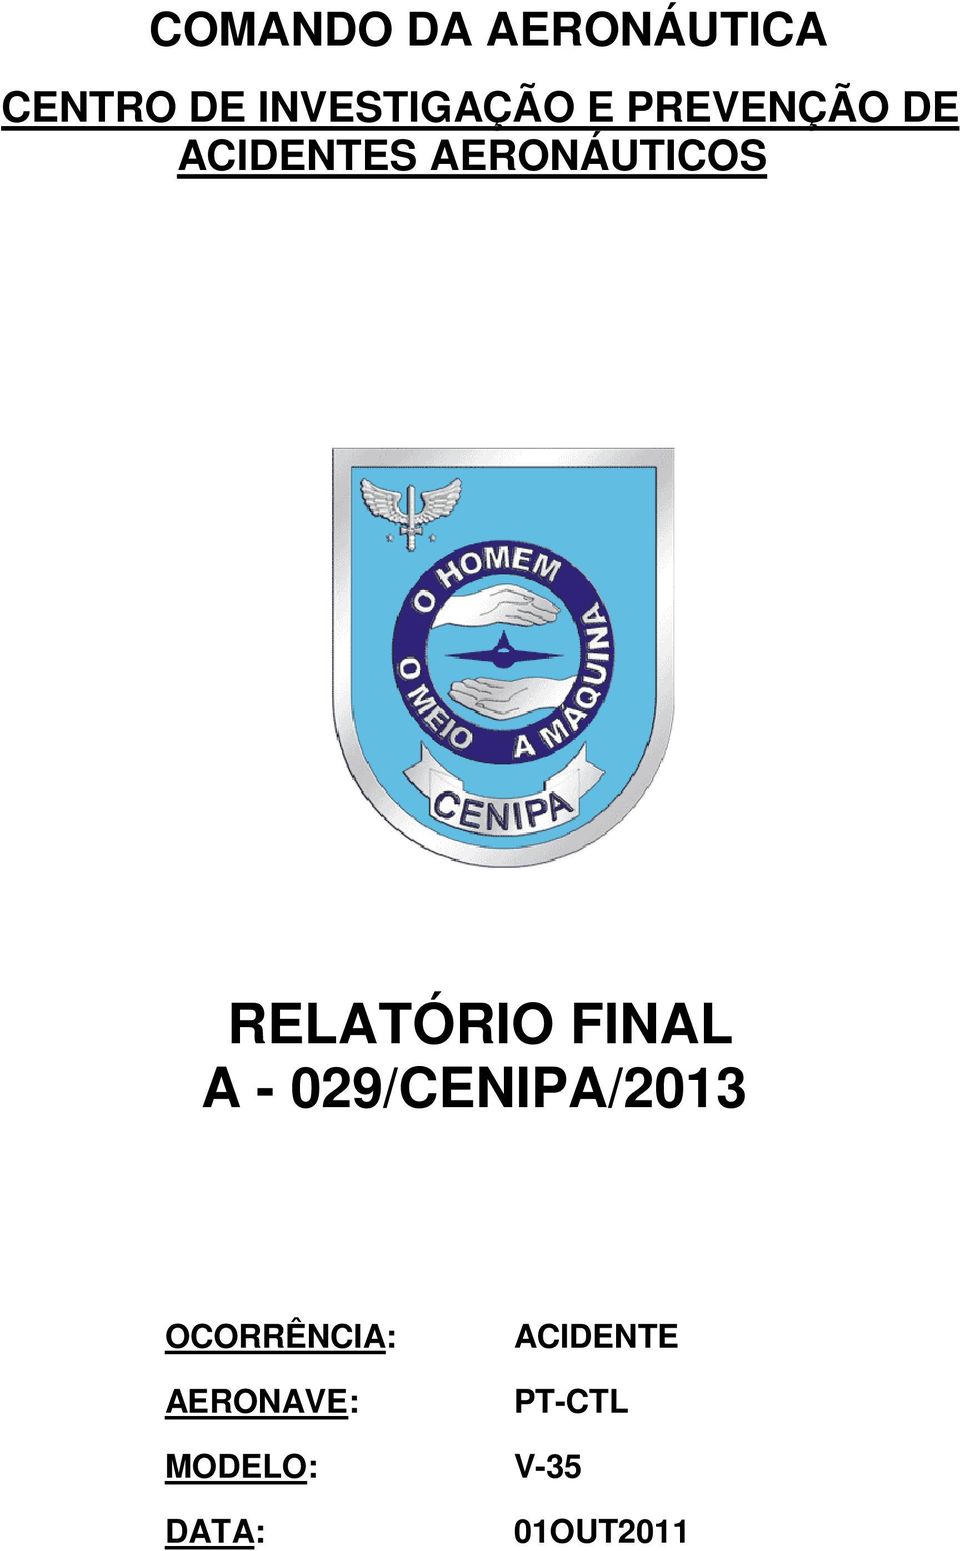 RELATÓRIO FINAL A - 029/CENIPA/2013